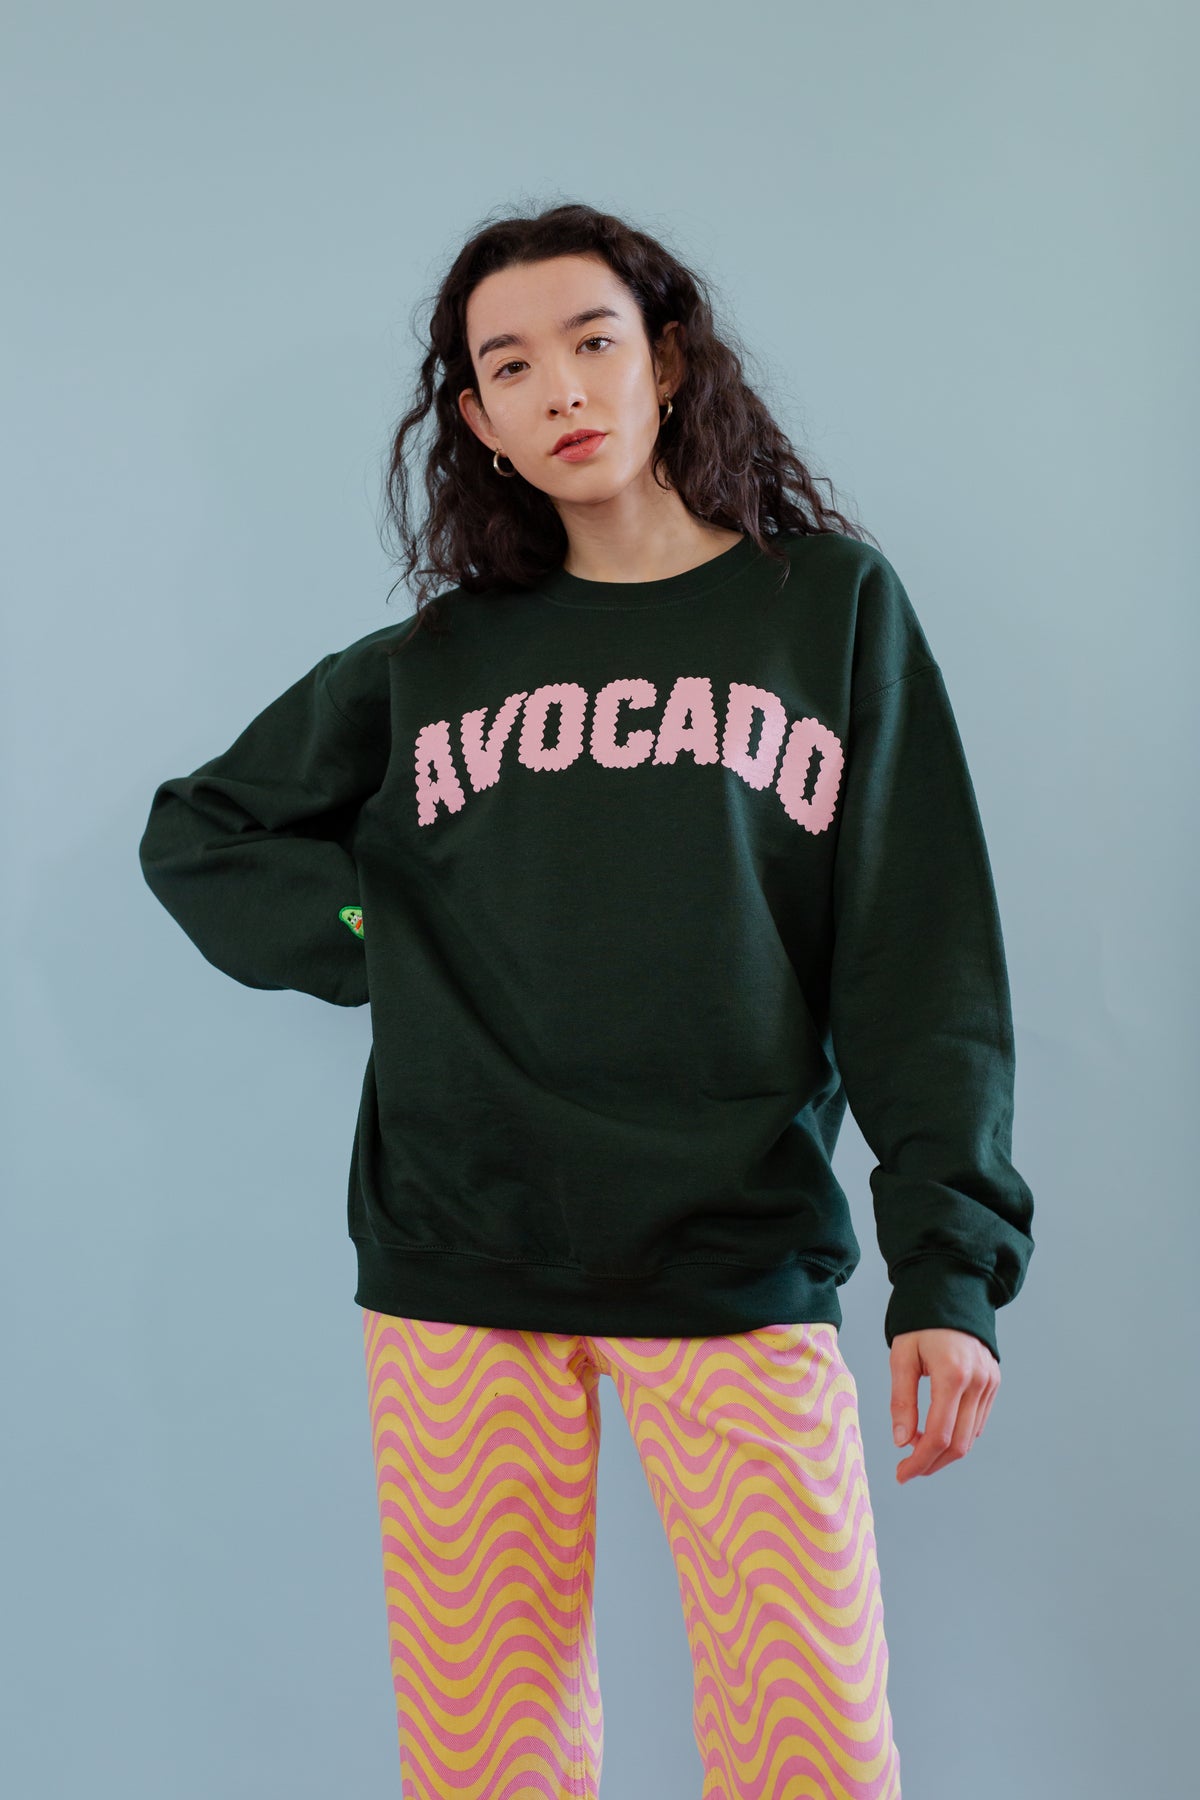 The Avocado Oversized Sweatshirt